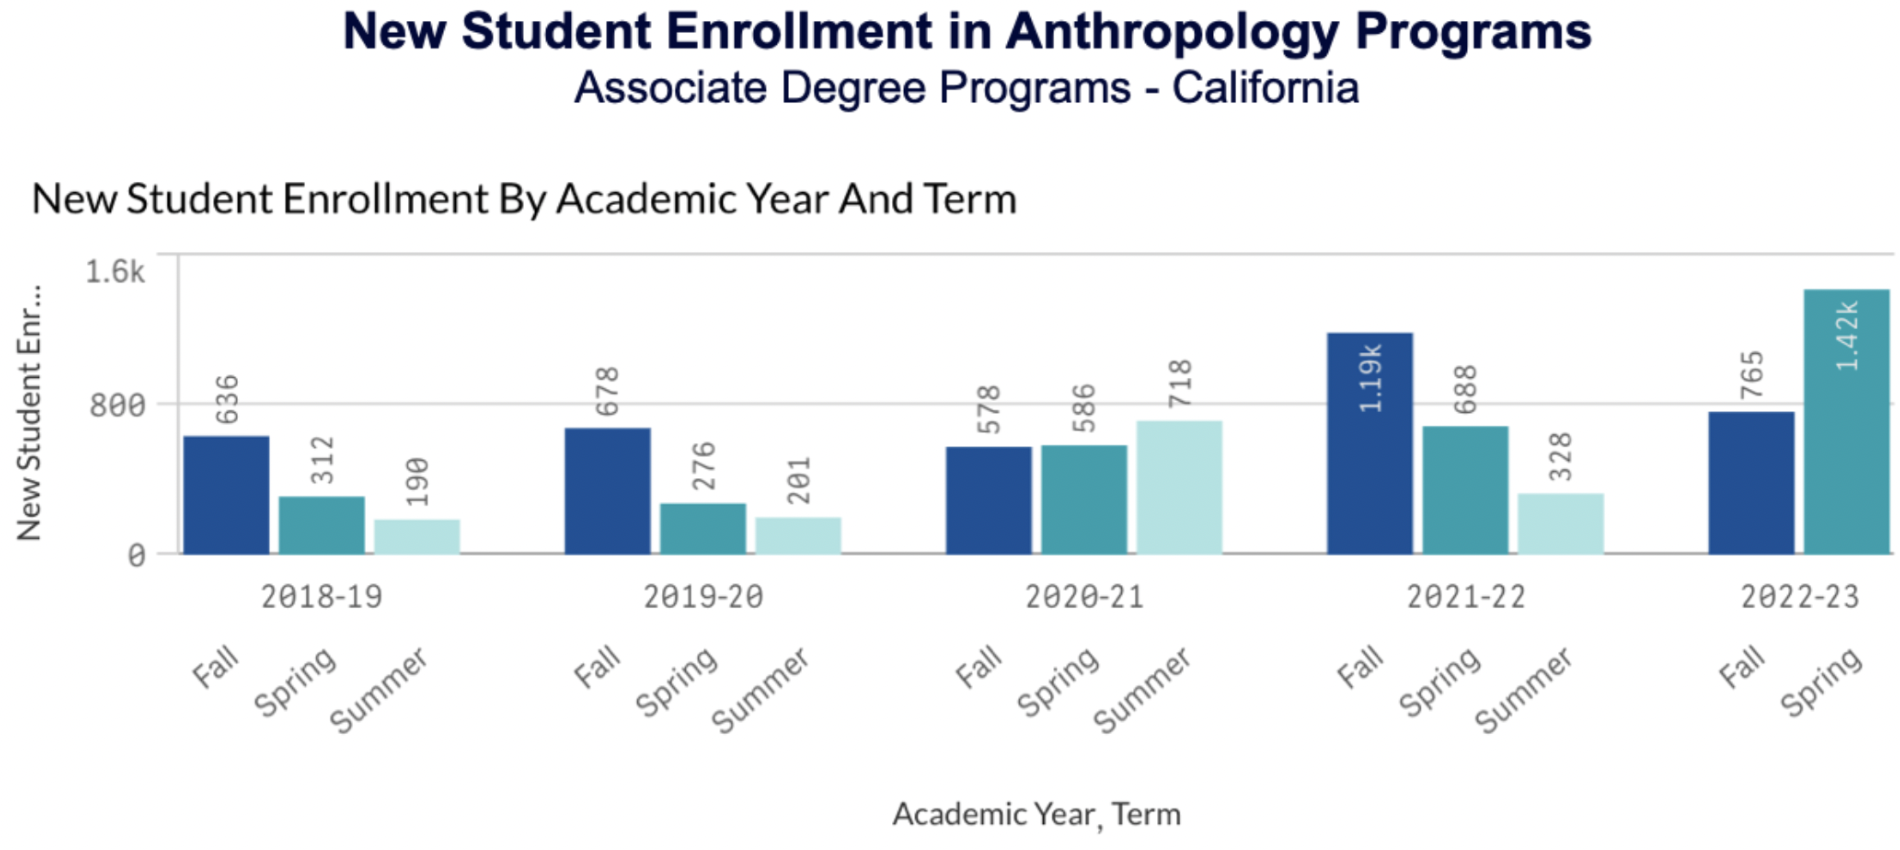 New Student Enrollment in Anthropology Programs (Associate Degree Programs – California)